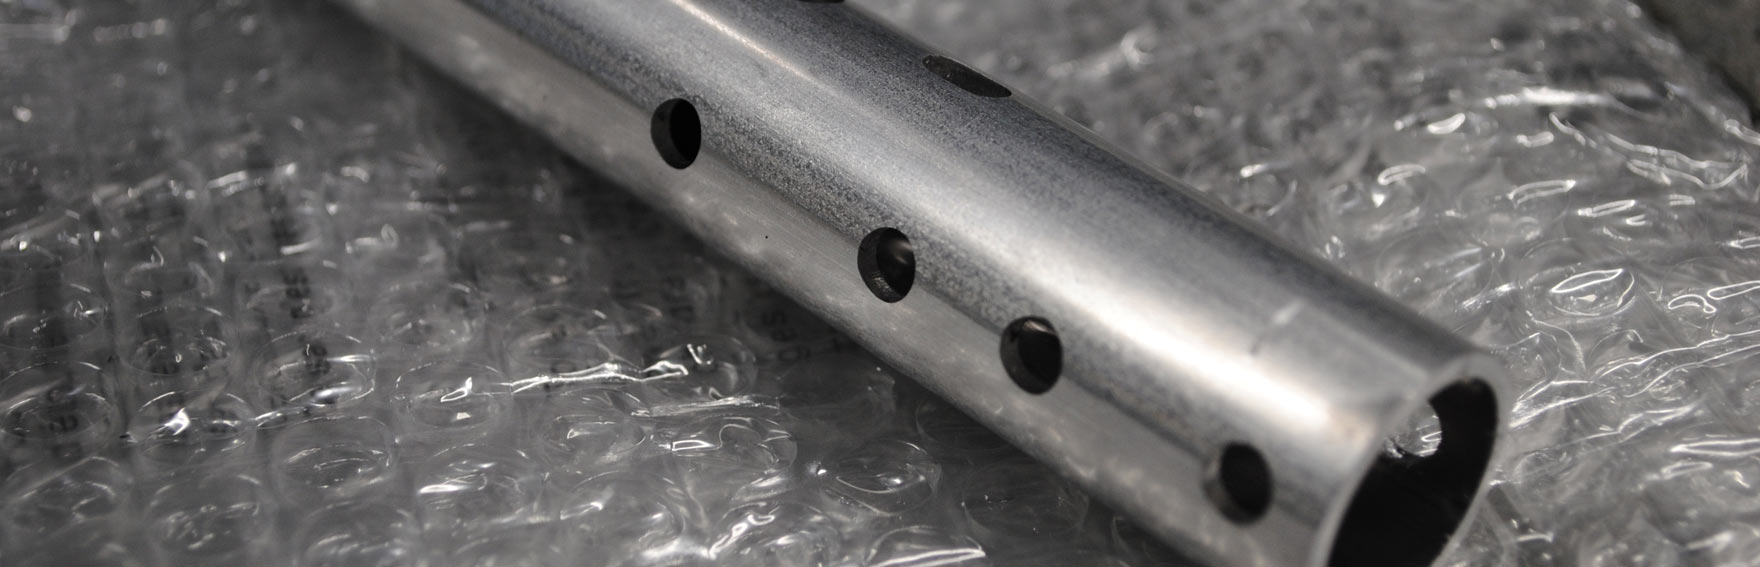 Taglio laser per tubi in acciaio, ottone, rame e alluminio